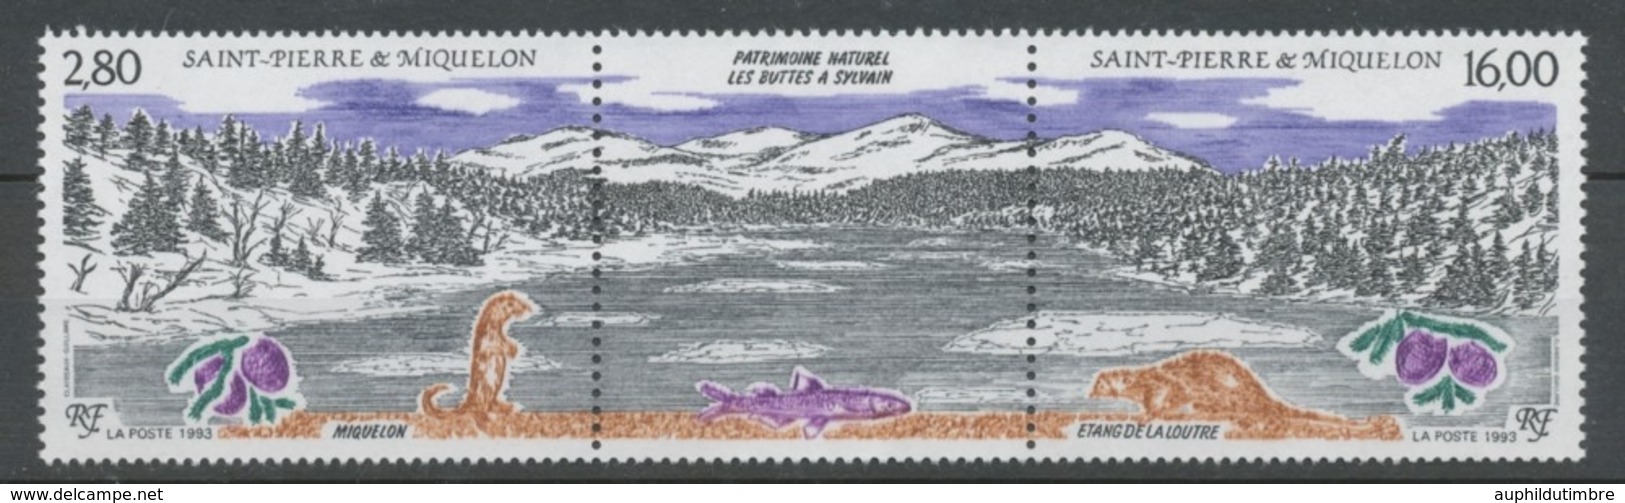 SPM  N°586A Patrimoine Naturel Des Iles St-Pierre-et-Miquelon Le Triptyque Avec Vignette Centrale ZC586A - Neufs